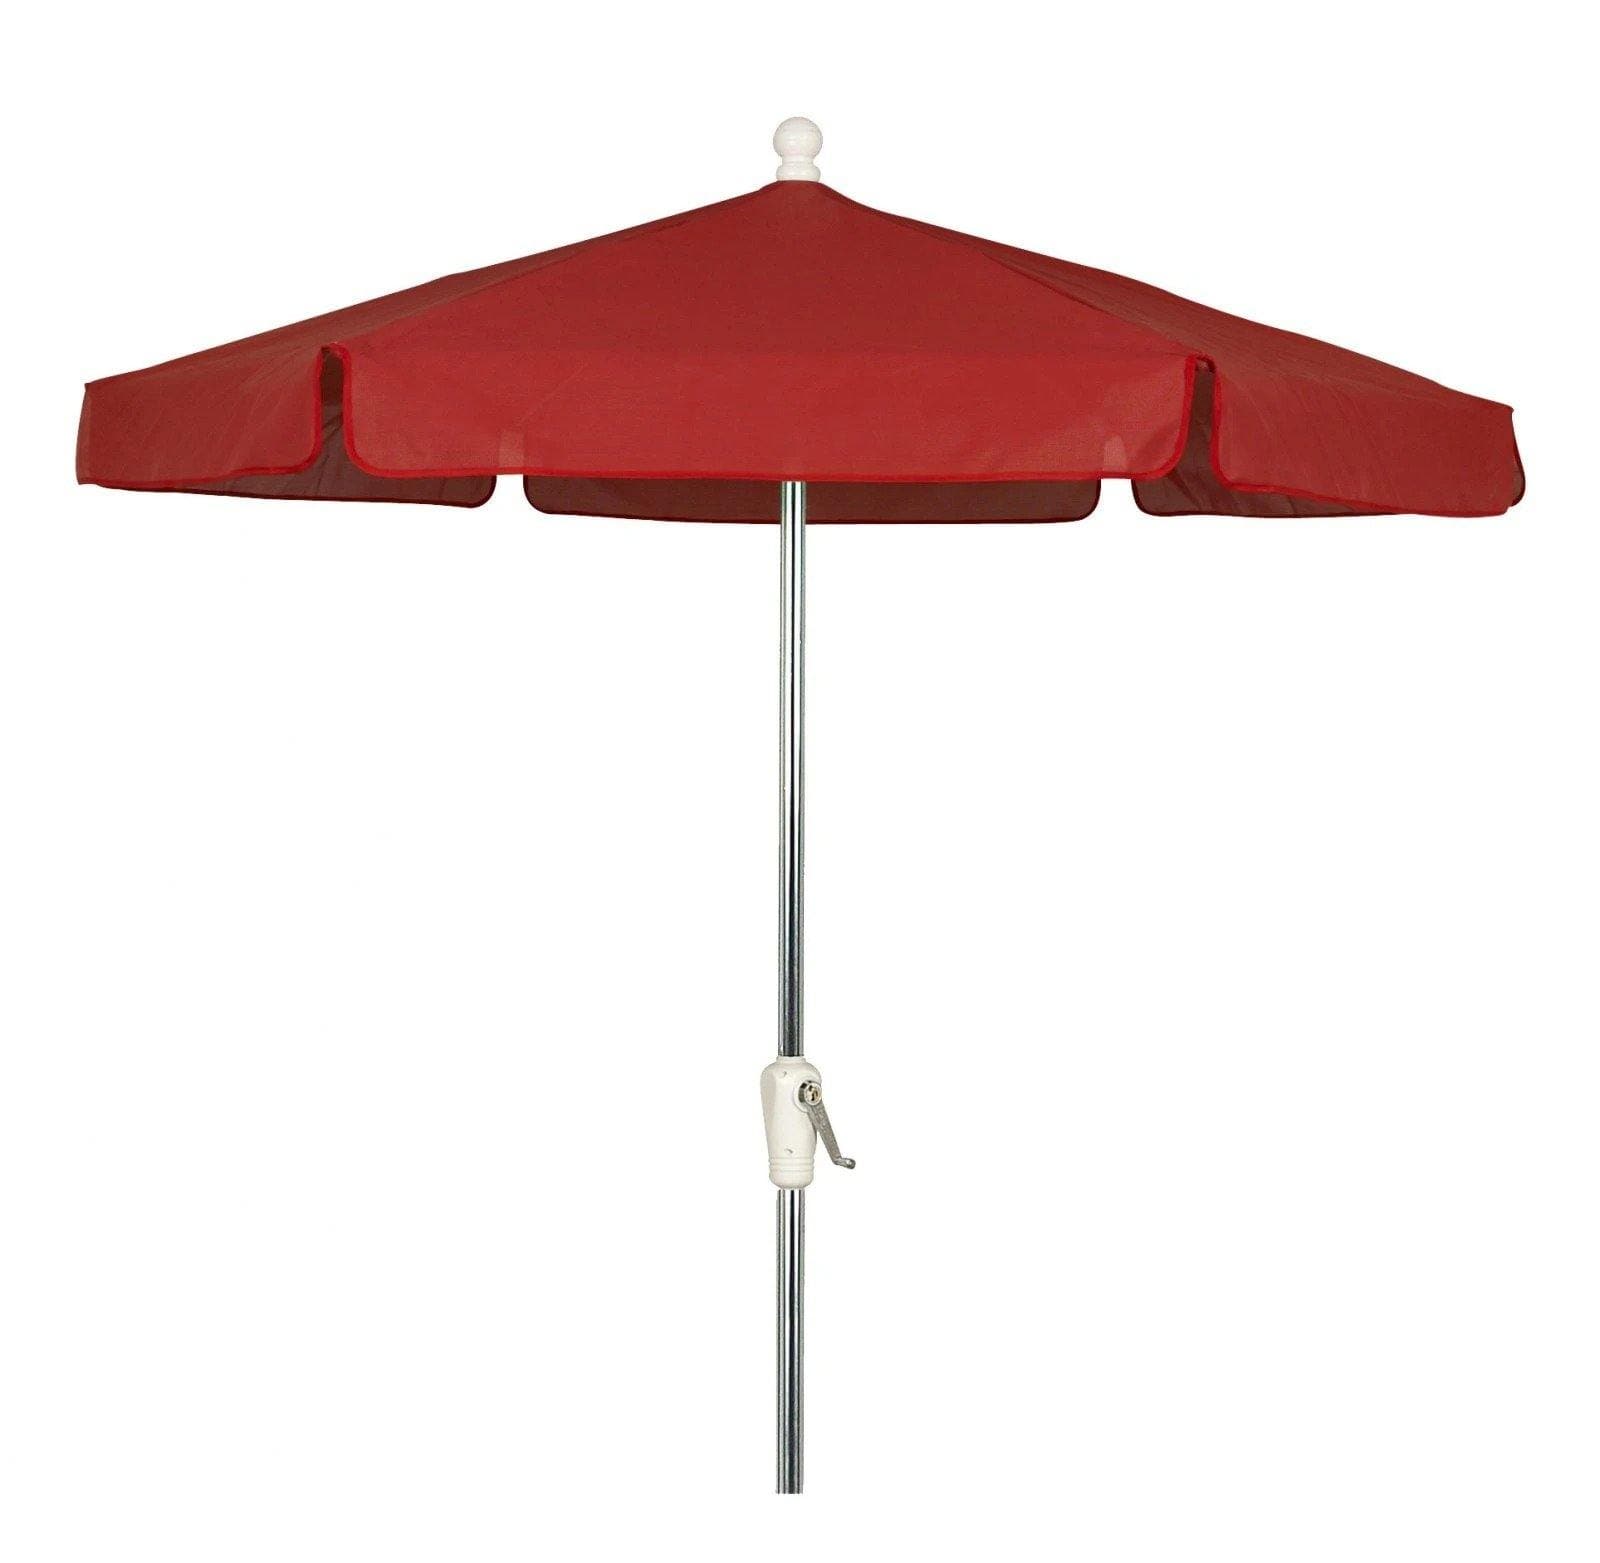 Fiberbuilt Table Umbrellas Red Fiberbuilt 7.5' Garden Umbrella w/ Push-Up Lift